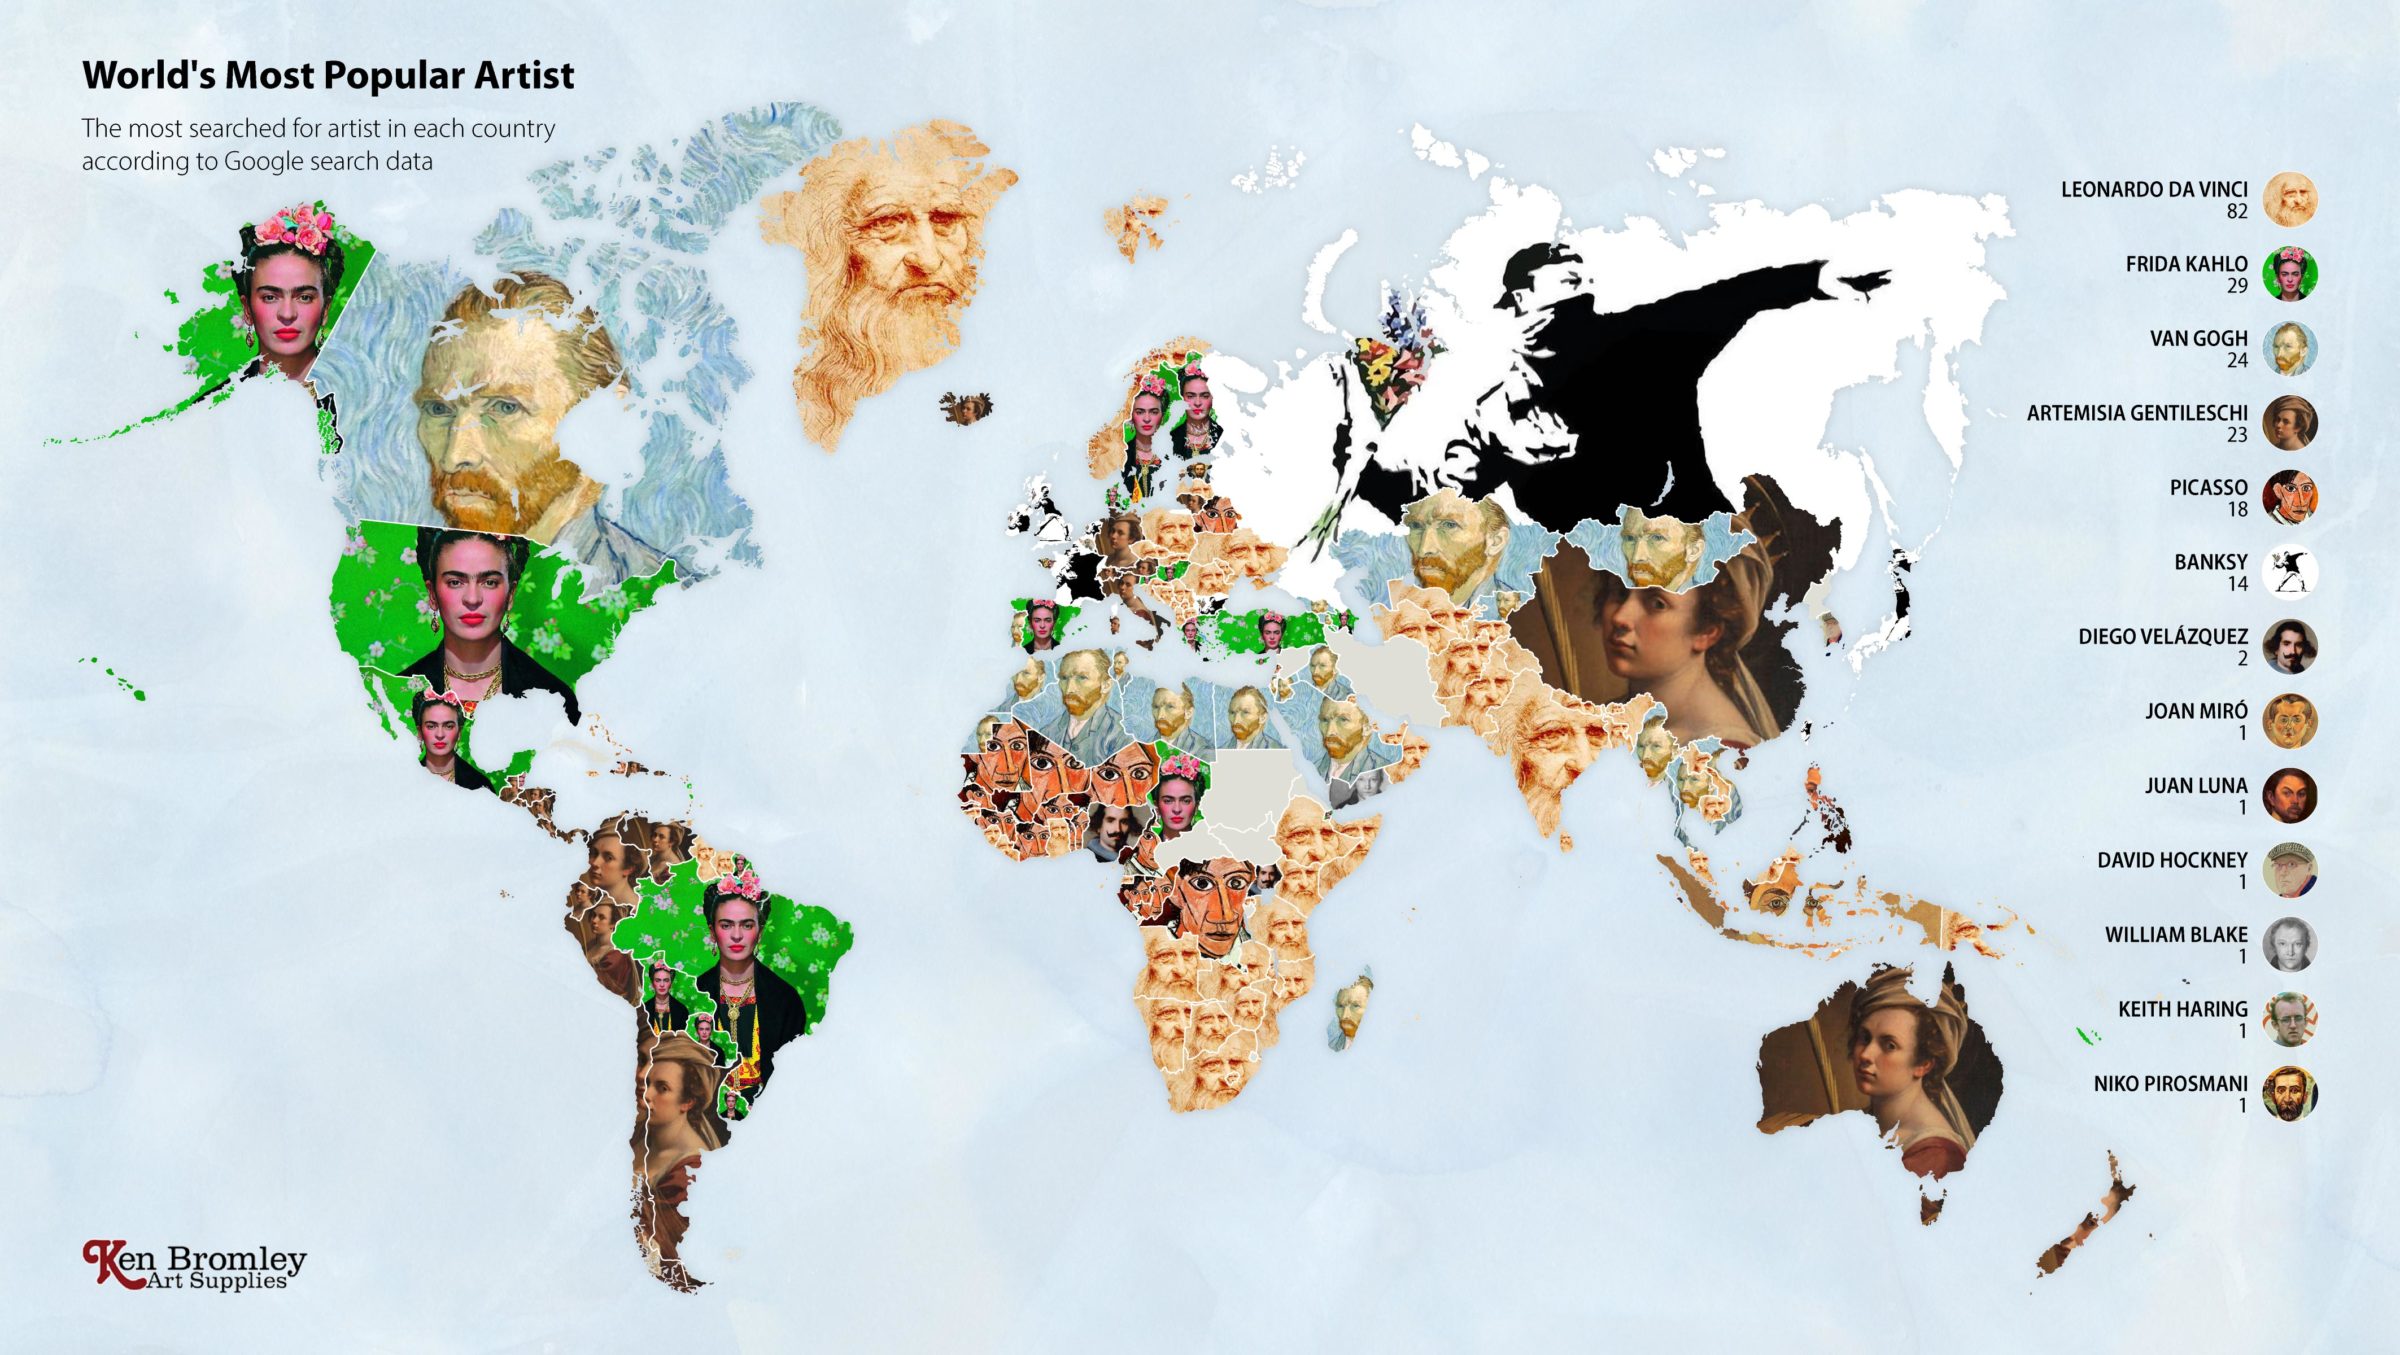 מפת העולם לפי האמנים הכי מחופשים בגוגל